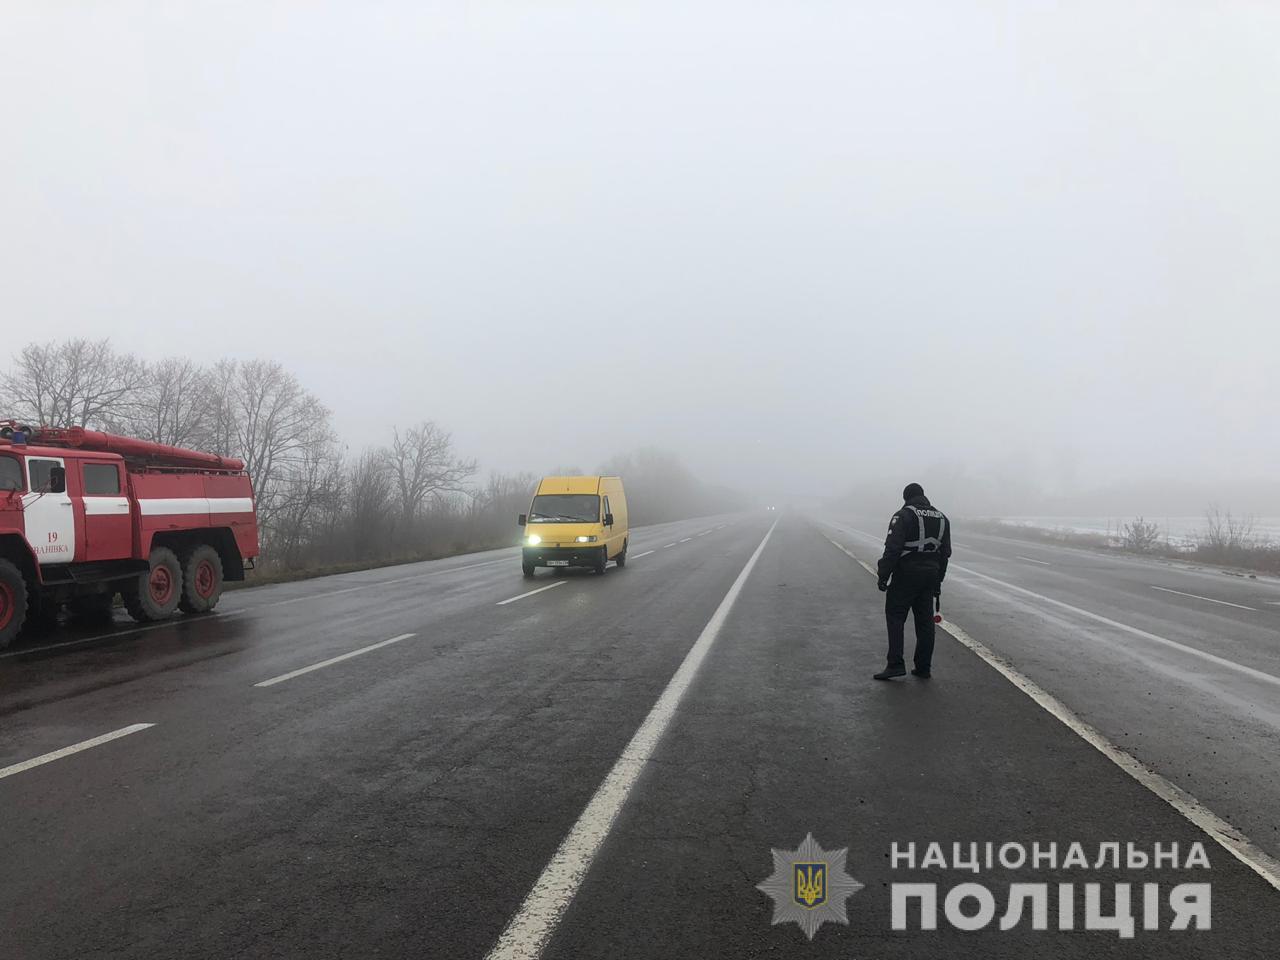 Туман и гололед на дорогах: на трассе "Одесса-Киев" в ДТП попало десять автомобилей и пассажирский автобус. Есть пострадавшие